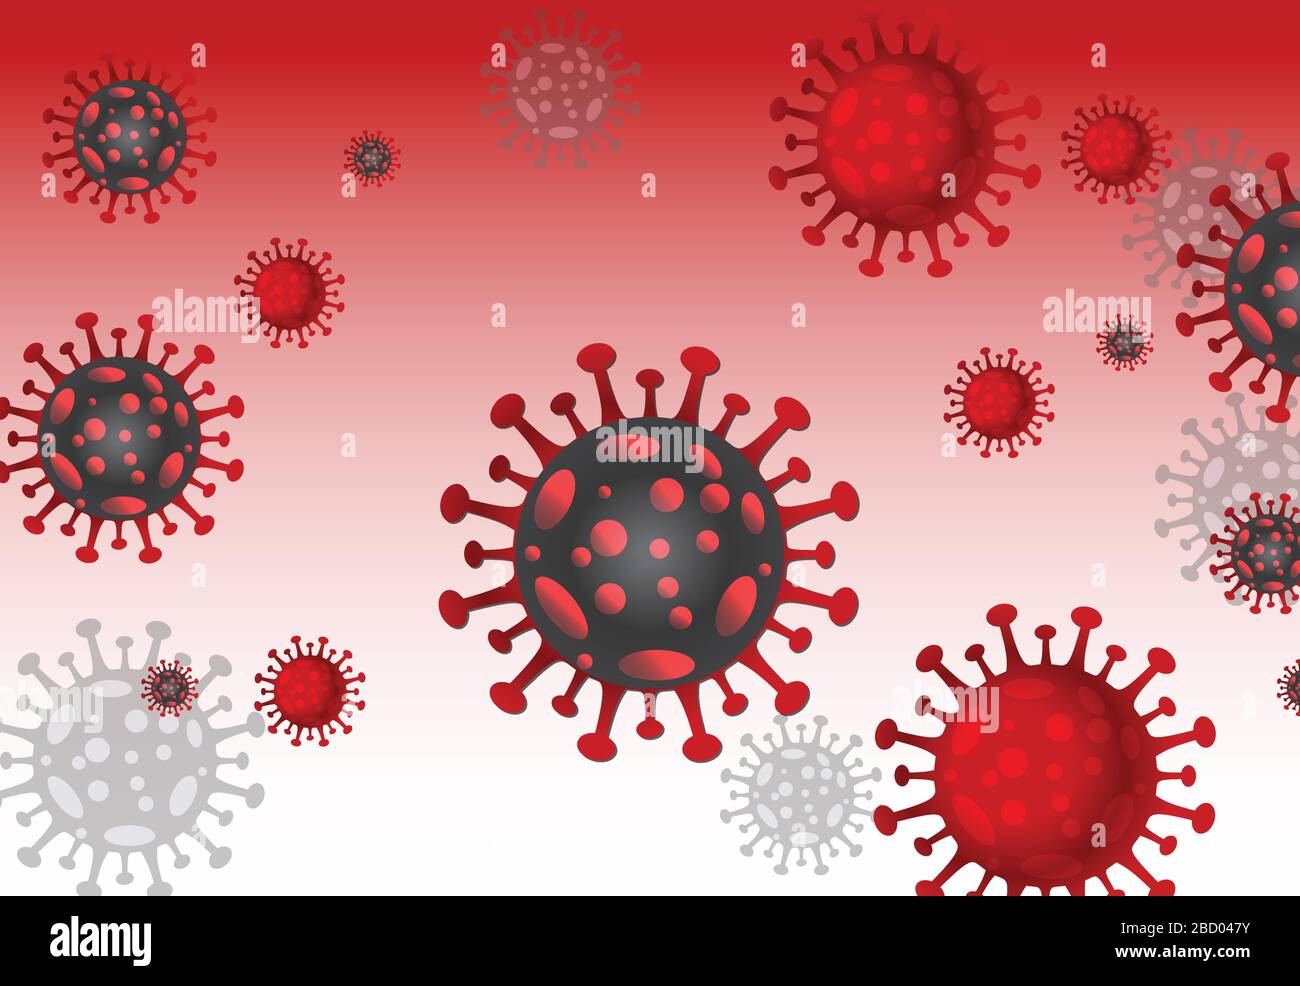 Kovid-19 Influenza-Corona-Virus-Hintergrund: Die Kovid19-Krankheit ist in diesem Fall eine Gesundheitsgefährlichkeit, die den menschlichen Körper und die Grippe als Grippe beeinflusst. Stock Vektor